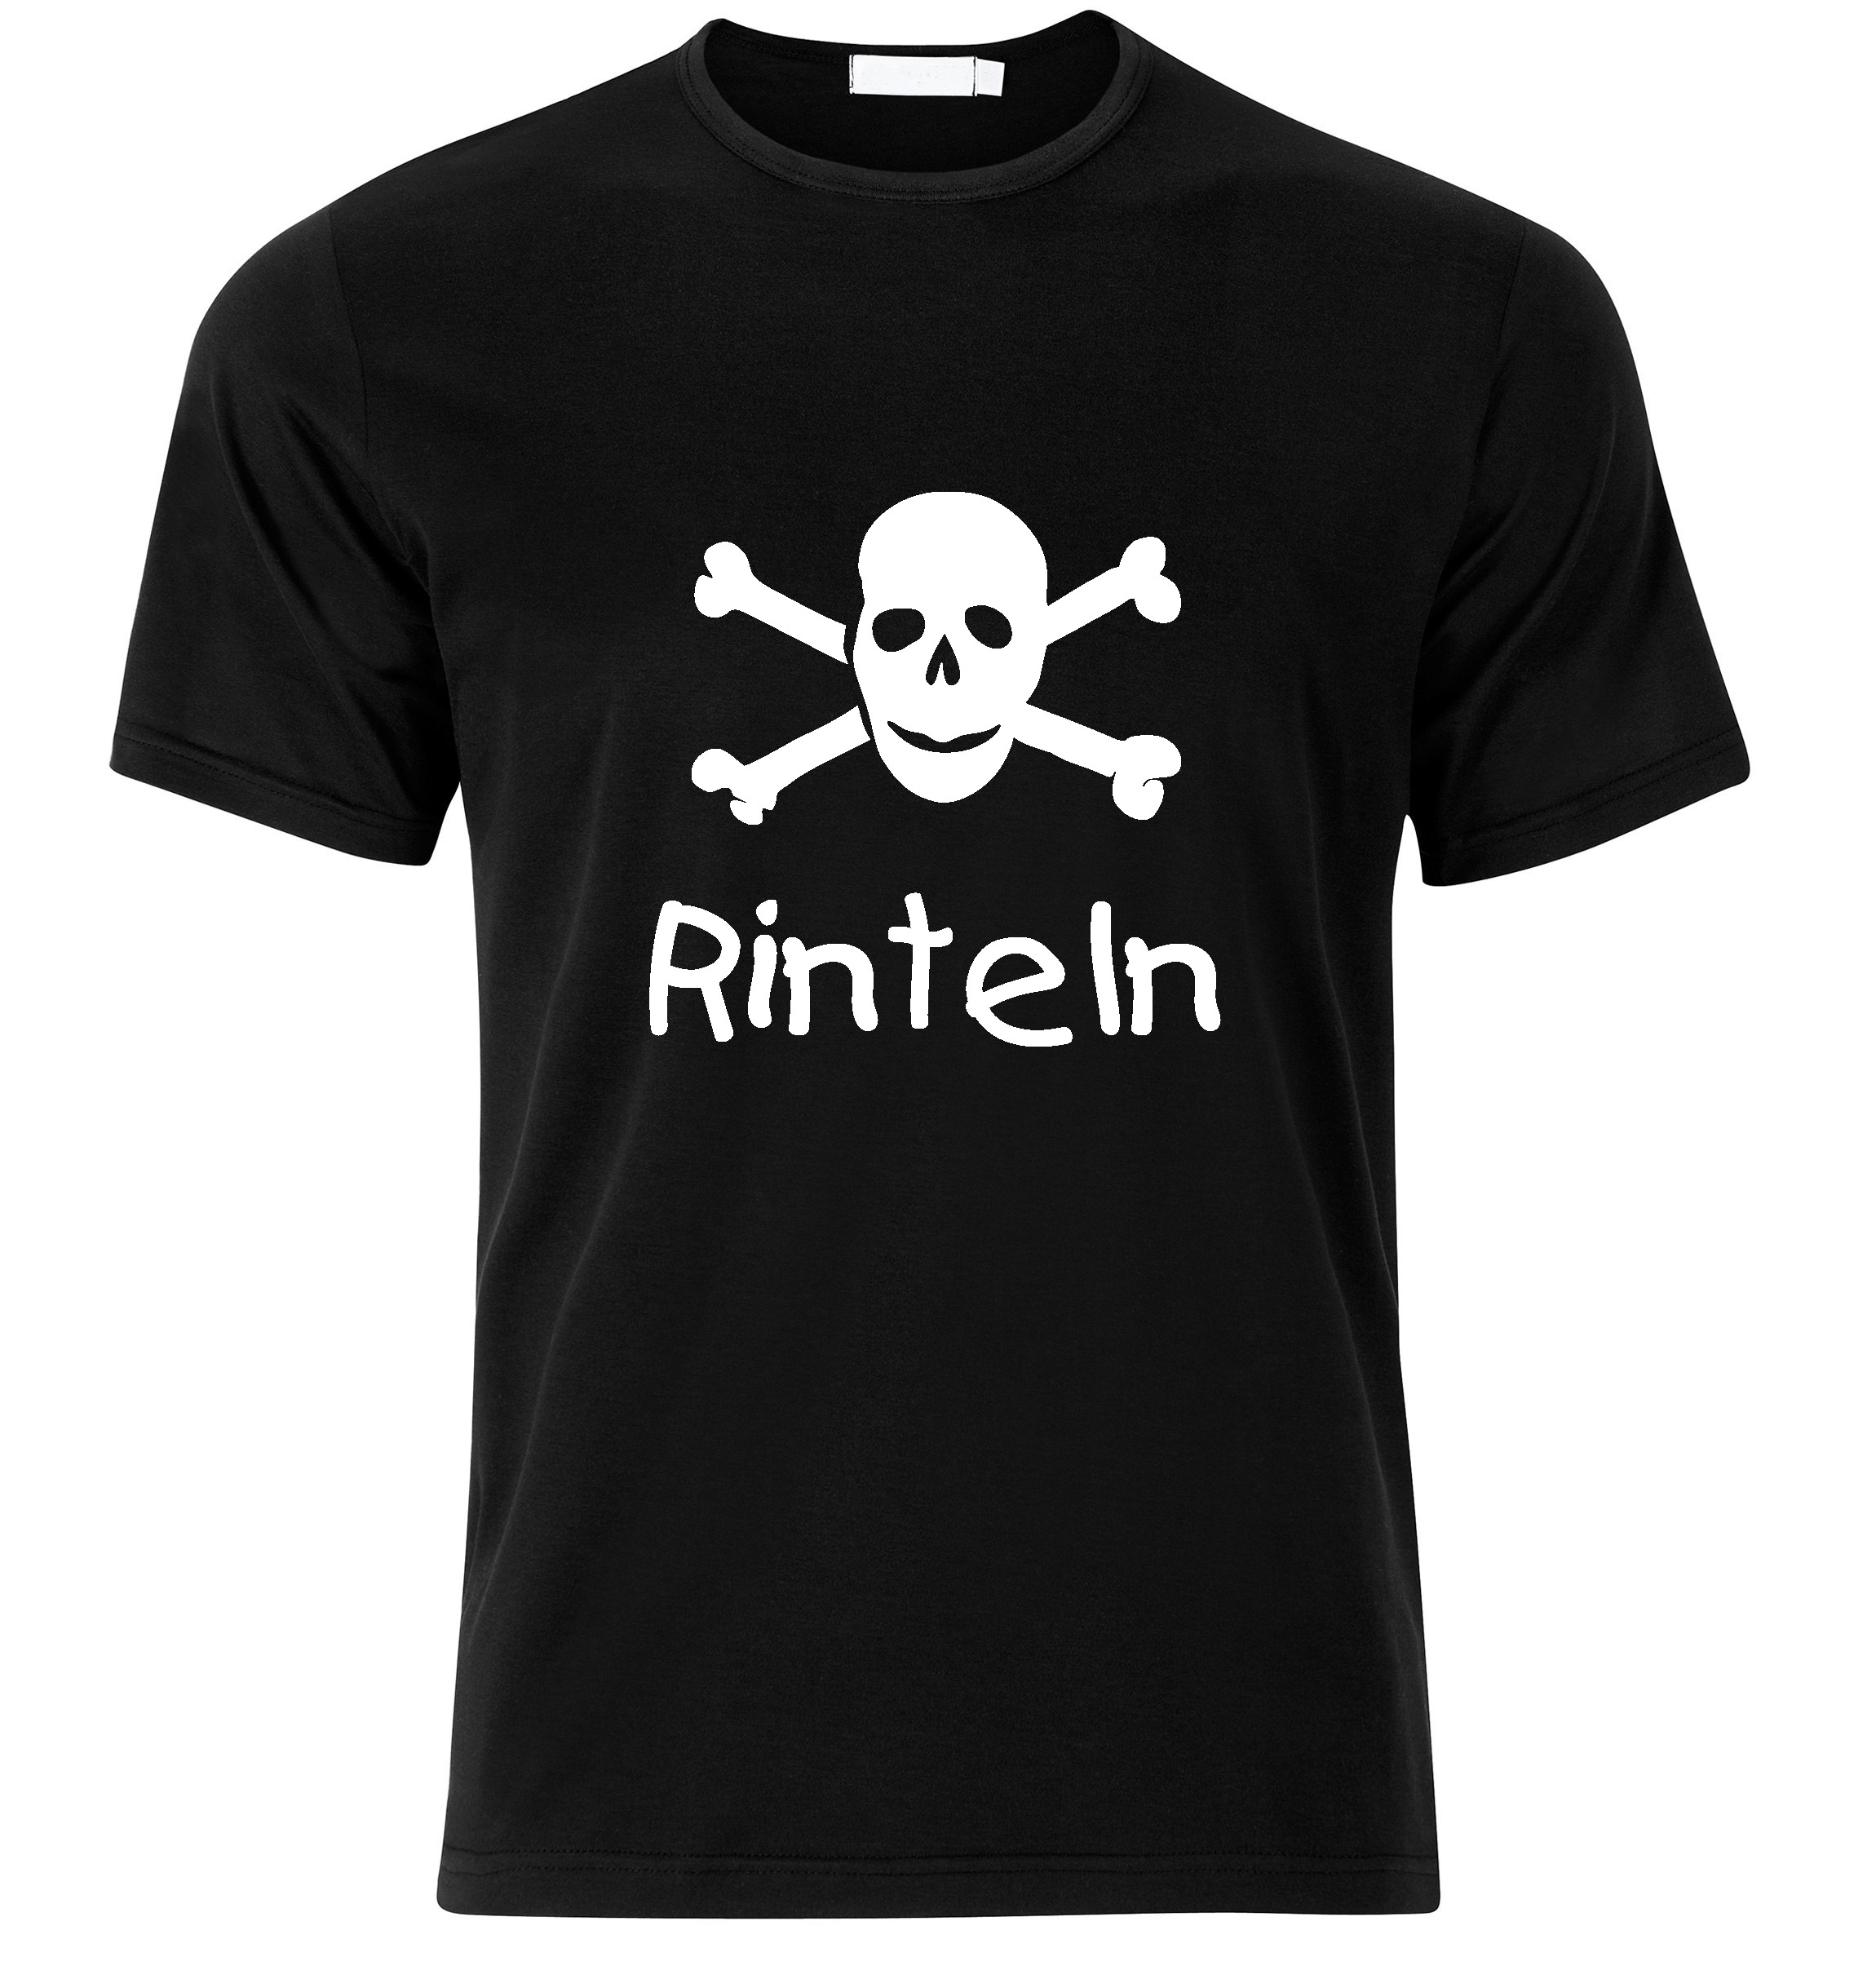 T-Shirt Rinteln Jolly Roger, Totenkopf